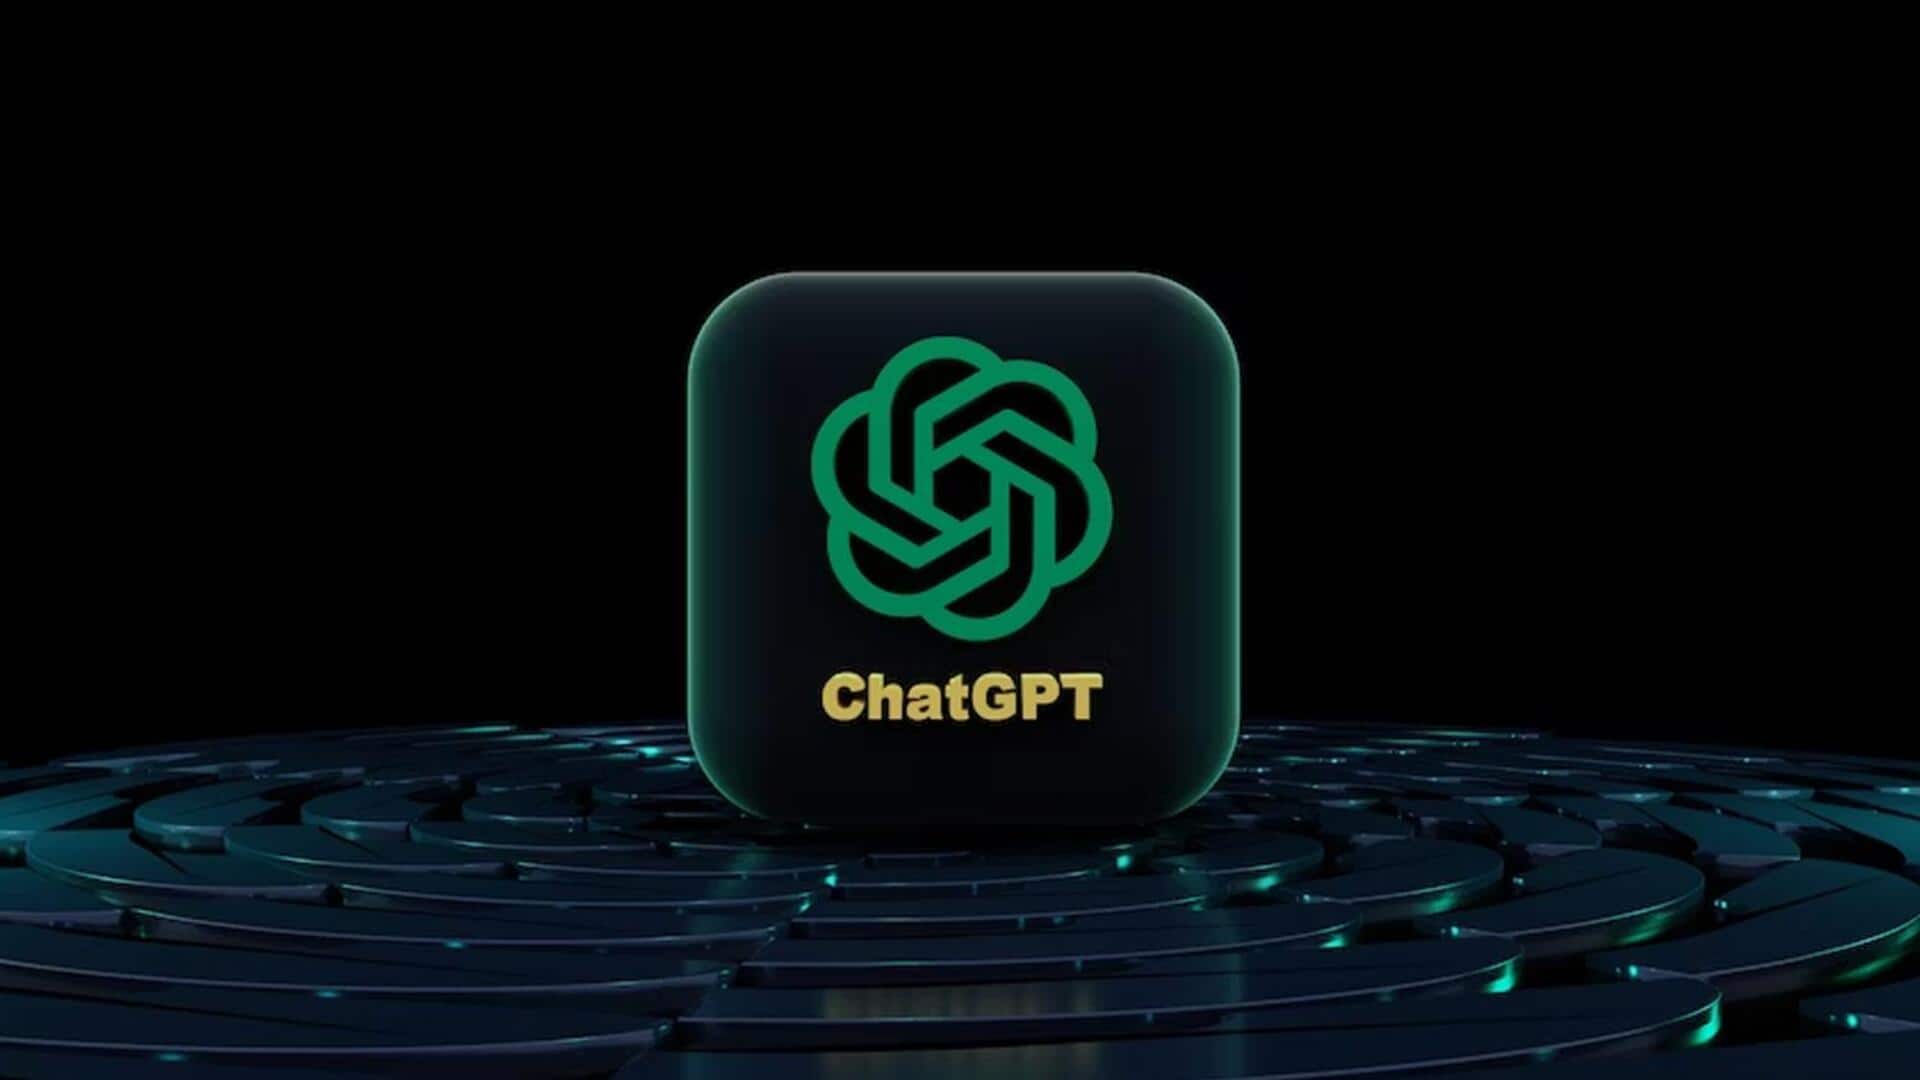 माइक्रोसॉफ्ट ने कुछ देर के लिए कर्मचारियों को ChatGPT उपयोग करने से किया मना, जानिए वजह 